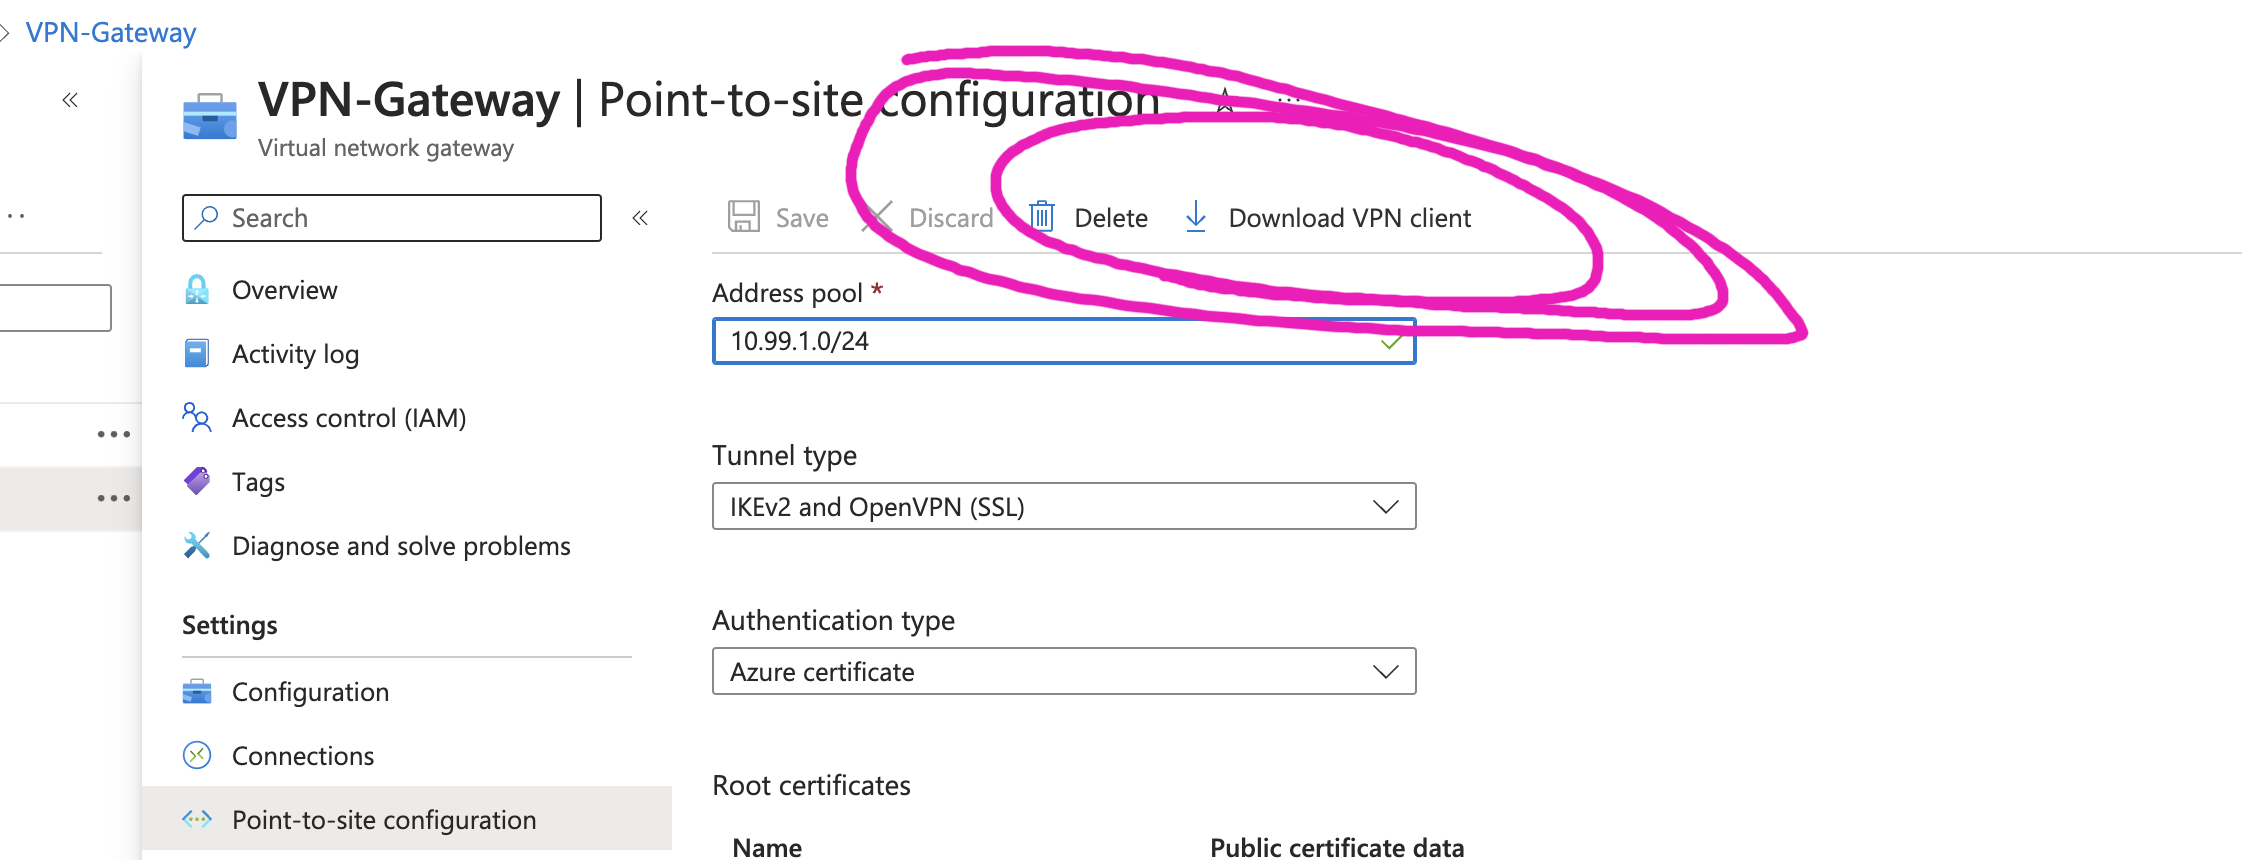 virtual network gateway - p2s configuration - download client